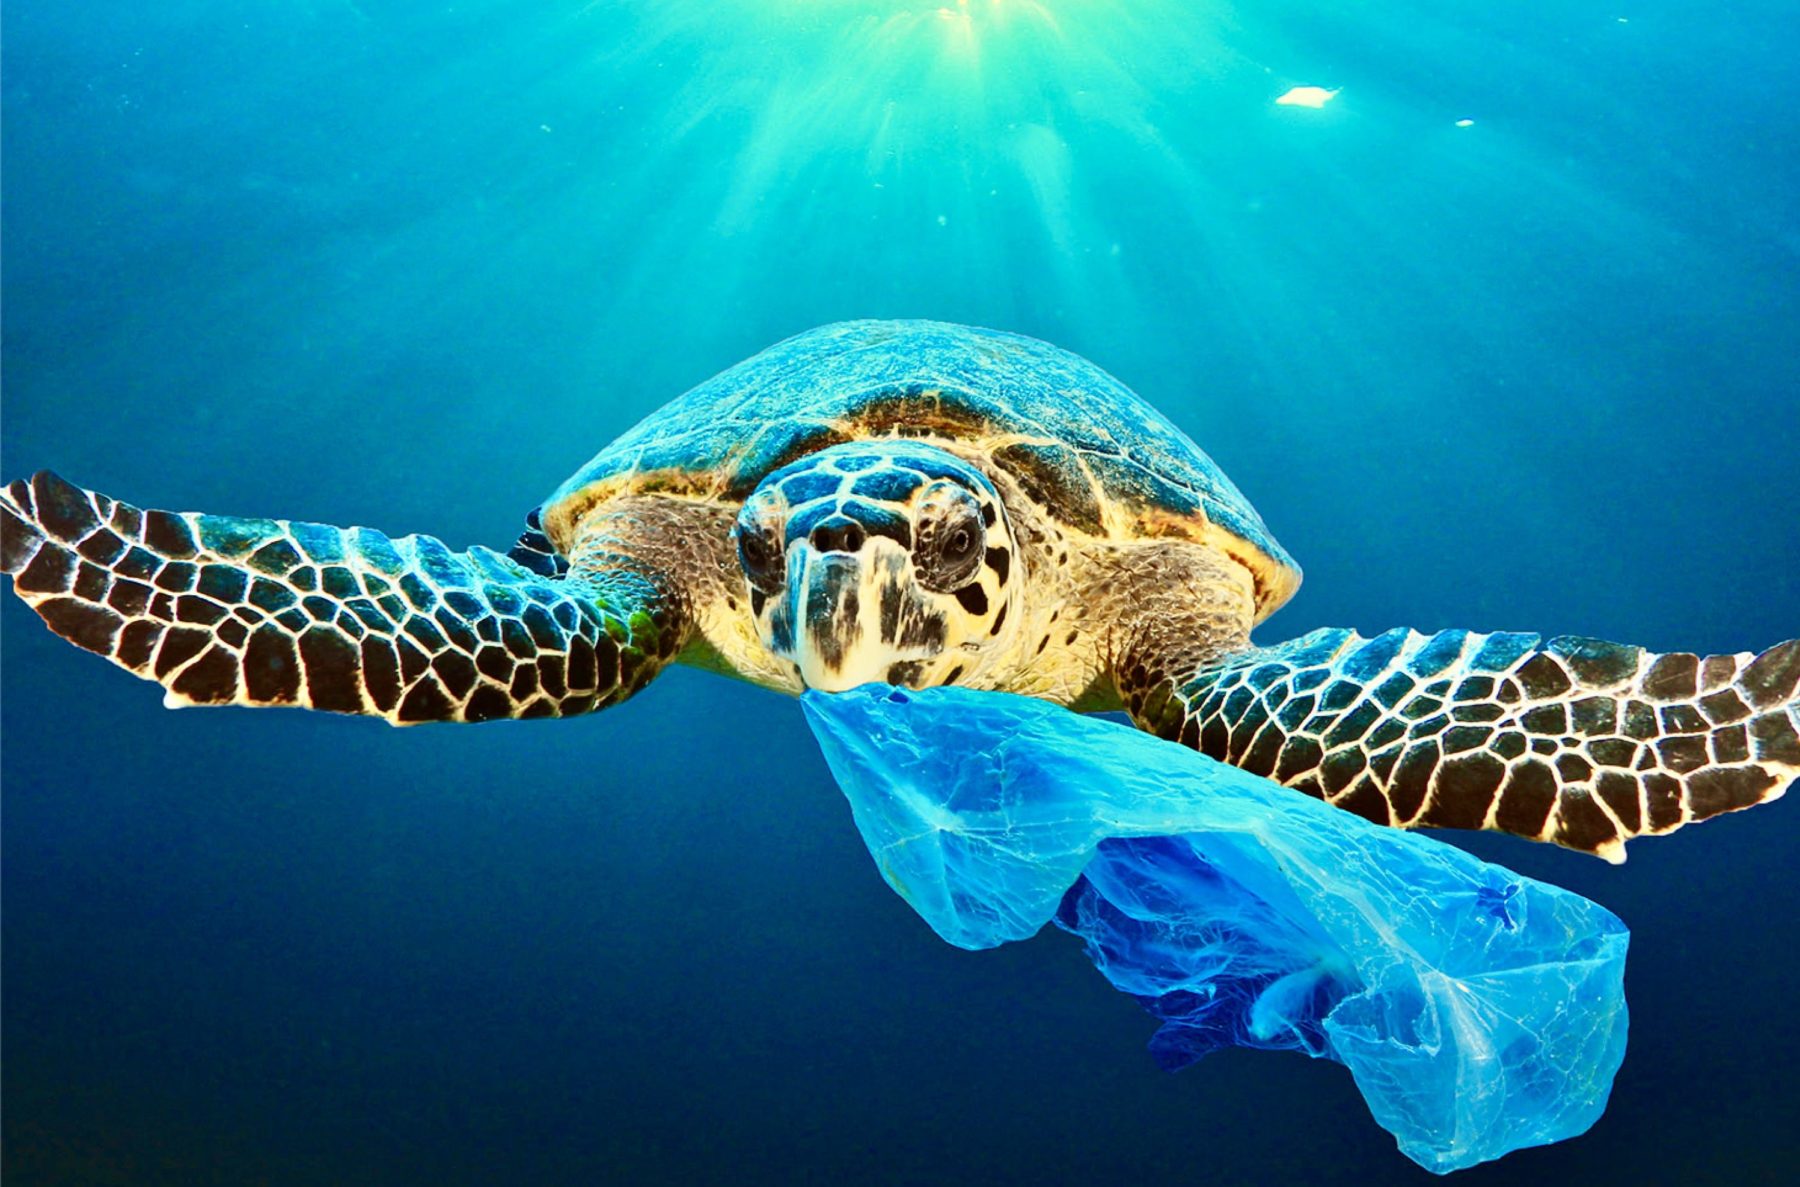 Je prends conscience de la pollution plastique dans les océans